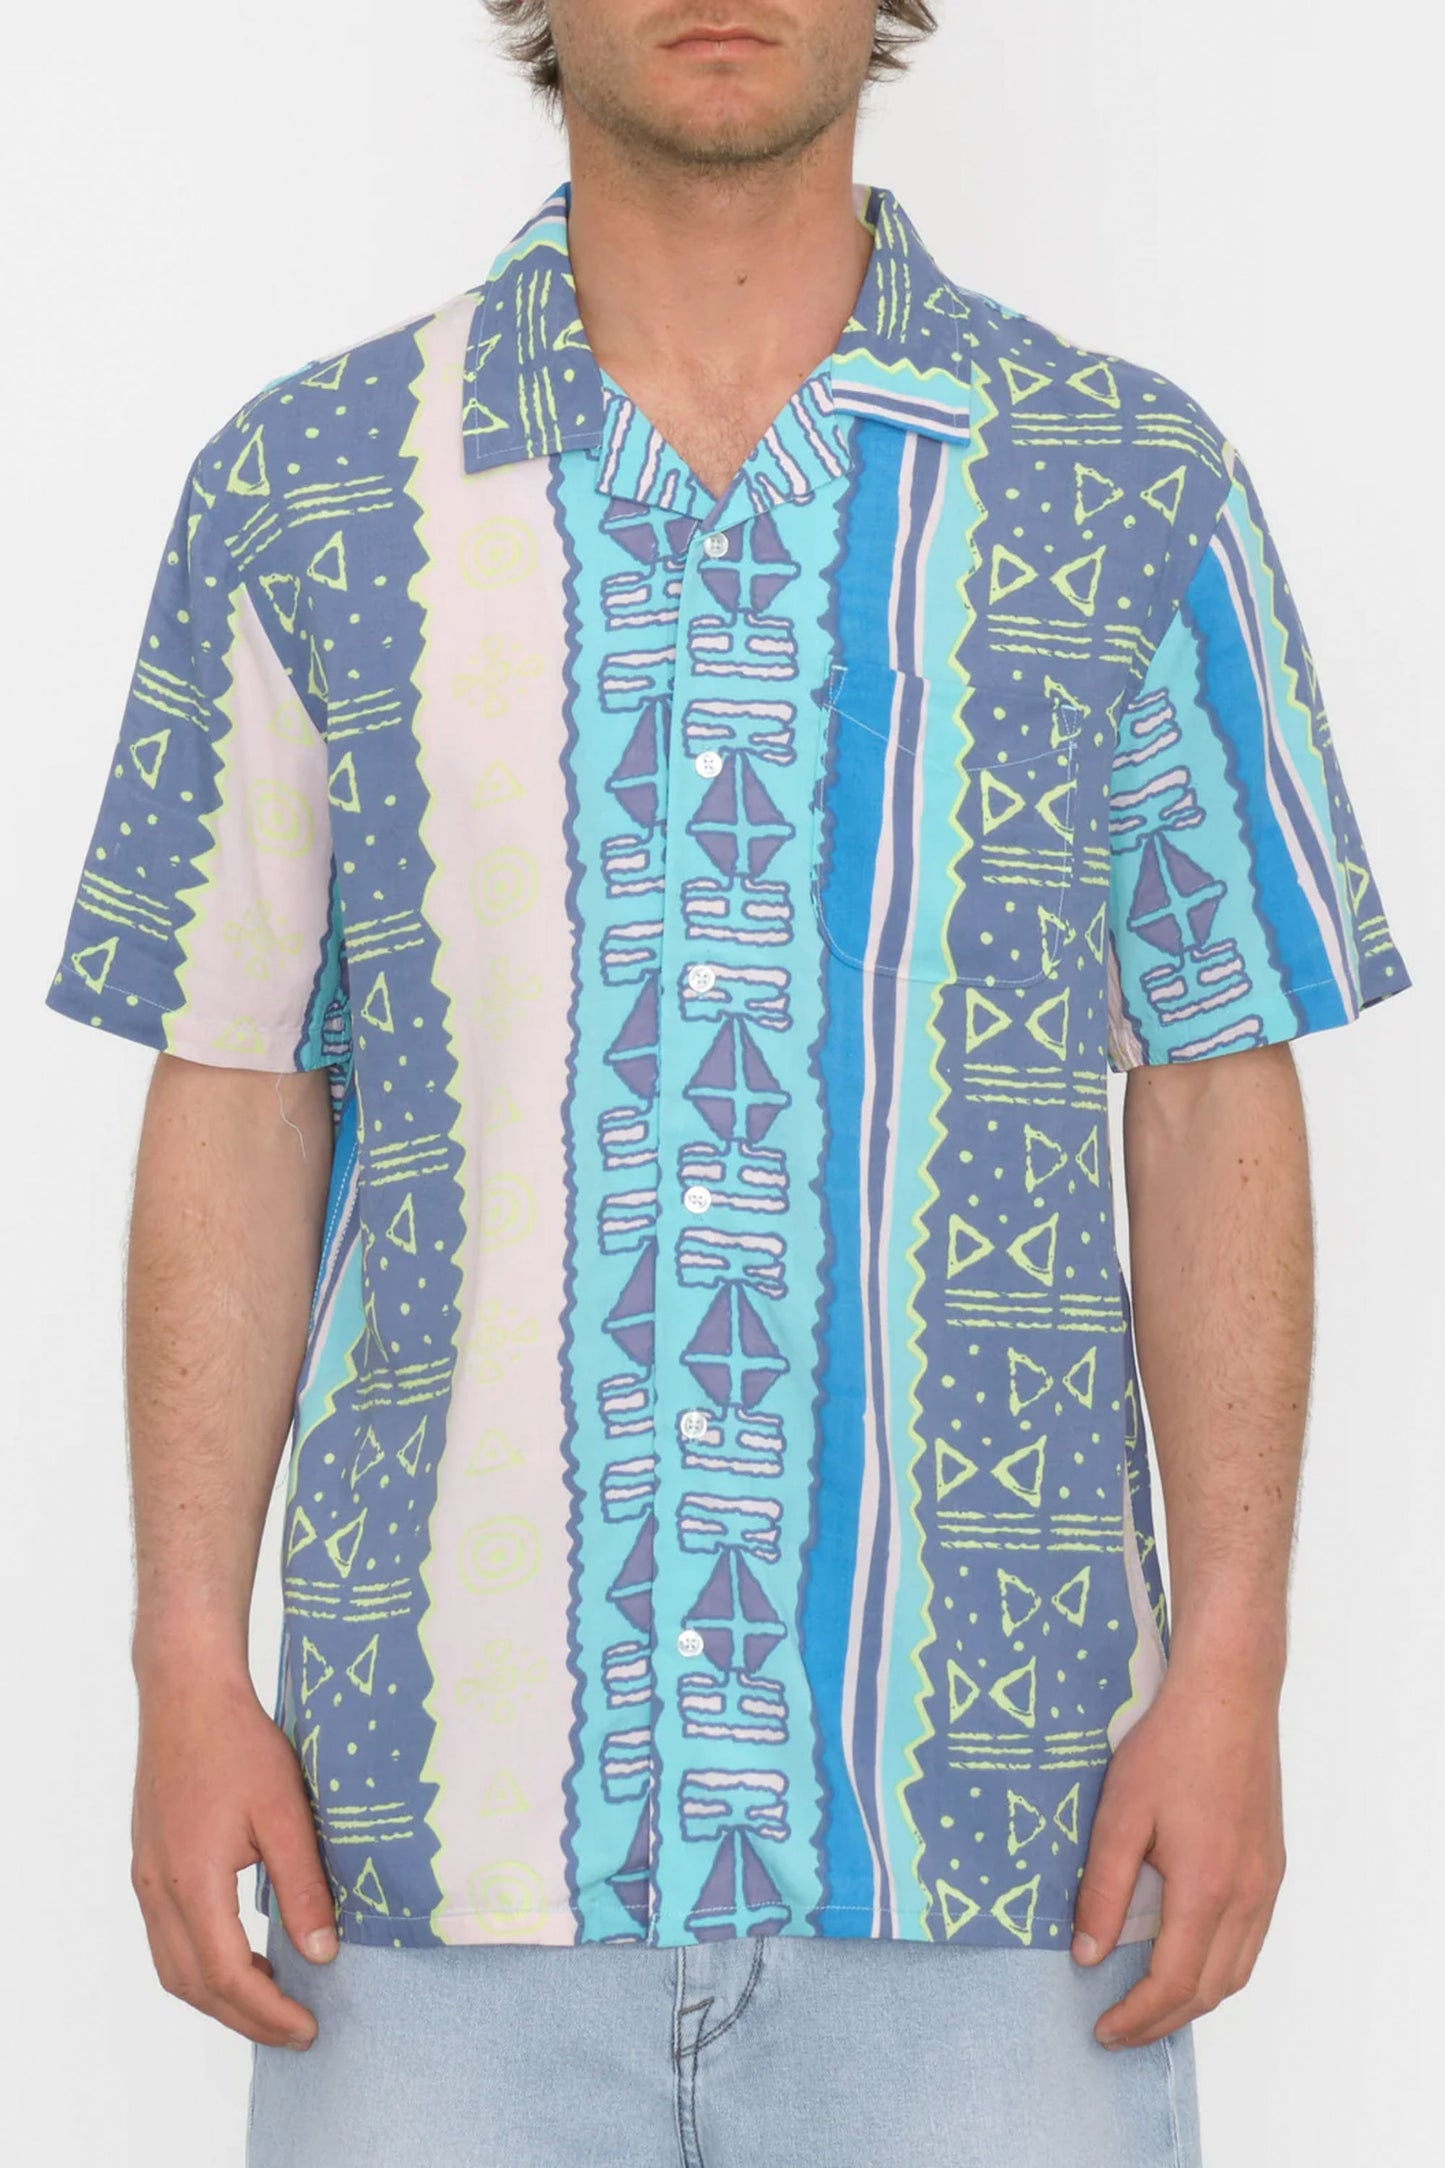 Pukas-Surf-Shop-man-shirt-VOLCOM-BOLD-MOVES-CRETE-BLUE